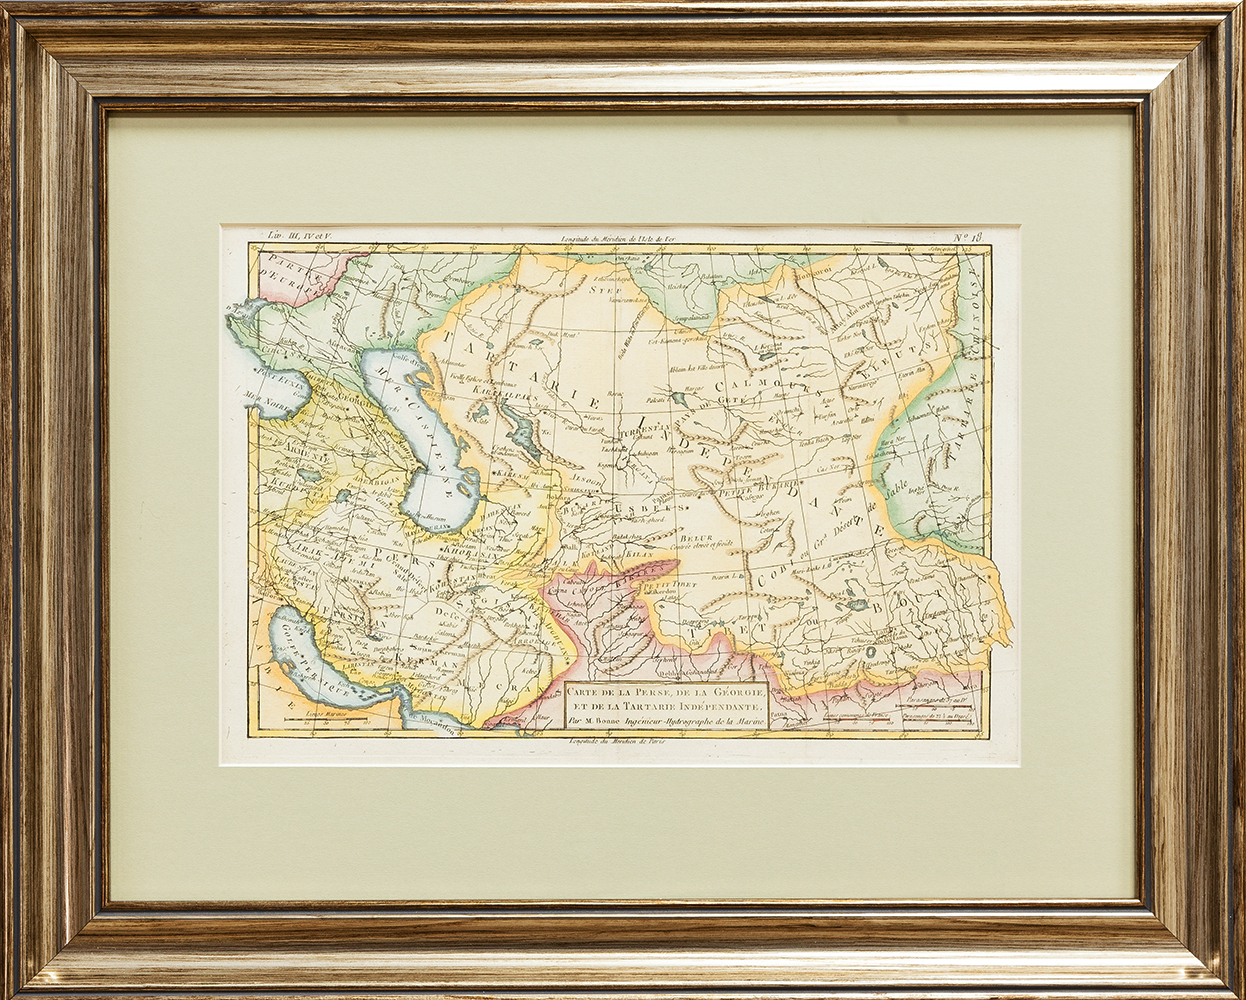 Купить карту Бонне (Карта Персии, Грузии и Независимой Тартарии)